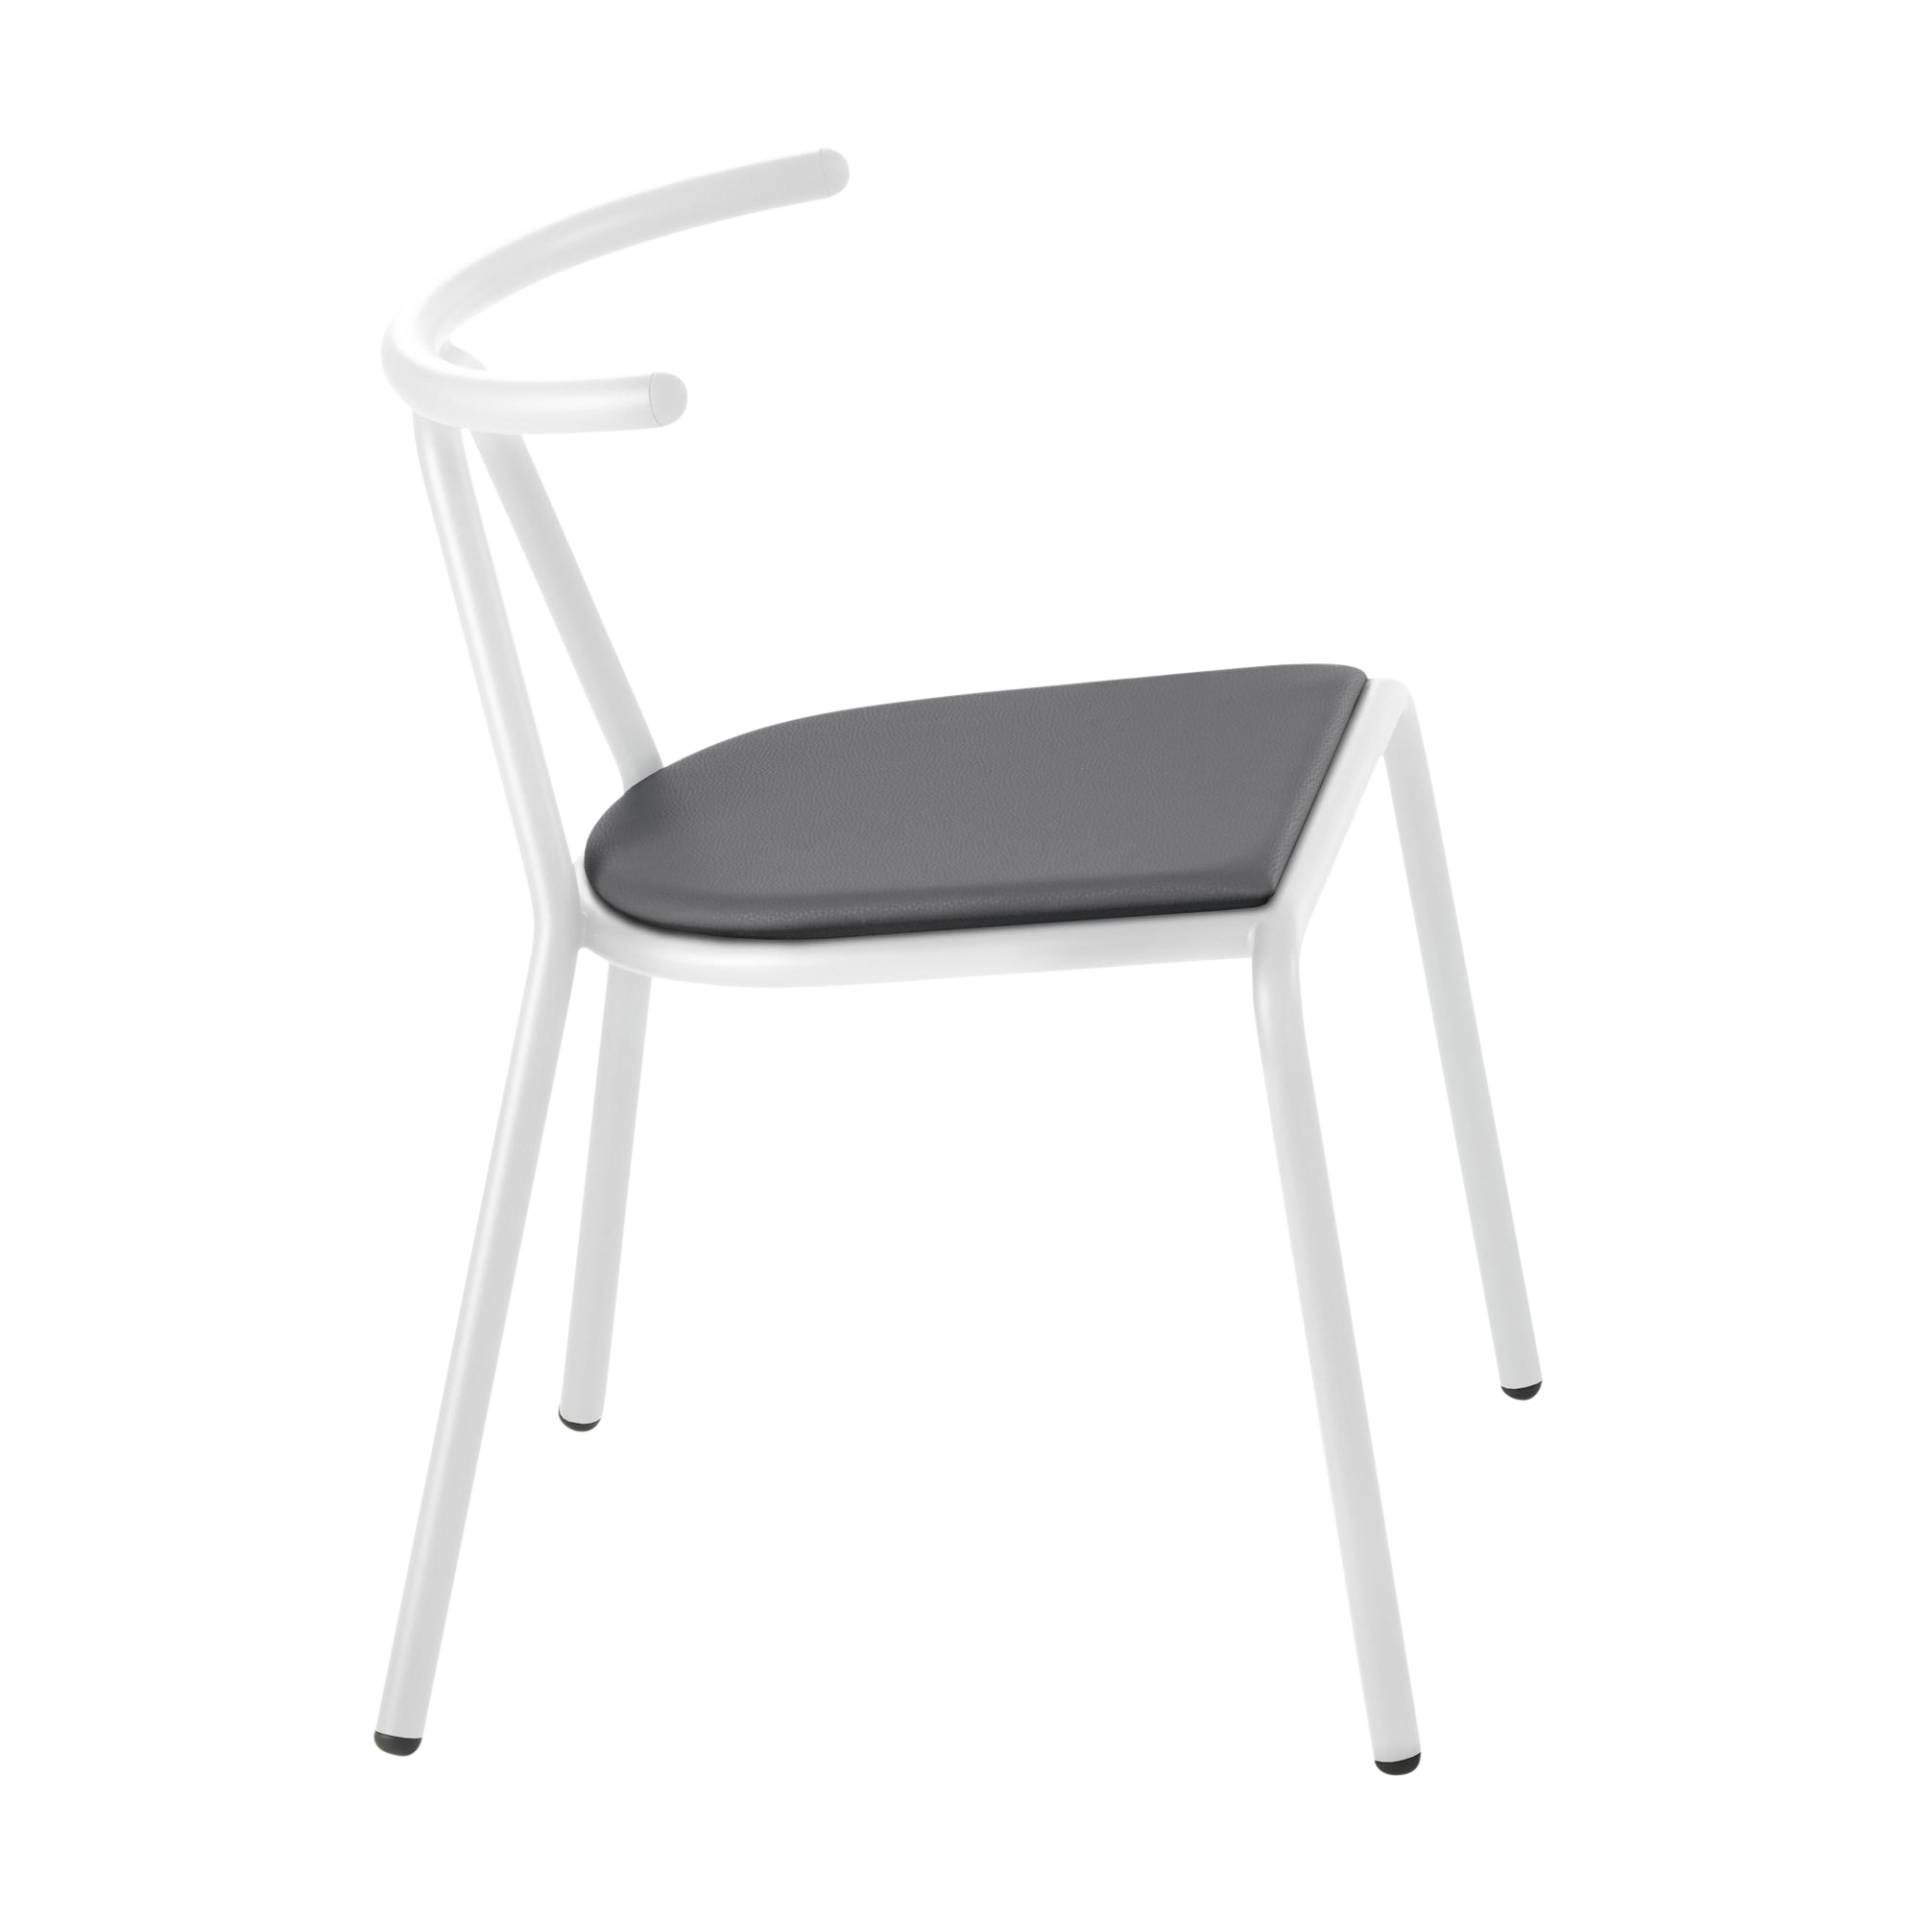 B-Line - Toro Stuhl Sitzfläche Platinum Flukso - anthrazit/Sitzfläche: Platinum Flukso/Gestell weiß/BxHxT 55x73,5x54cm von B-Line